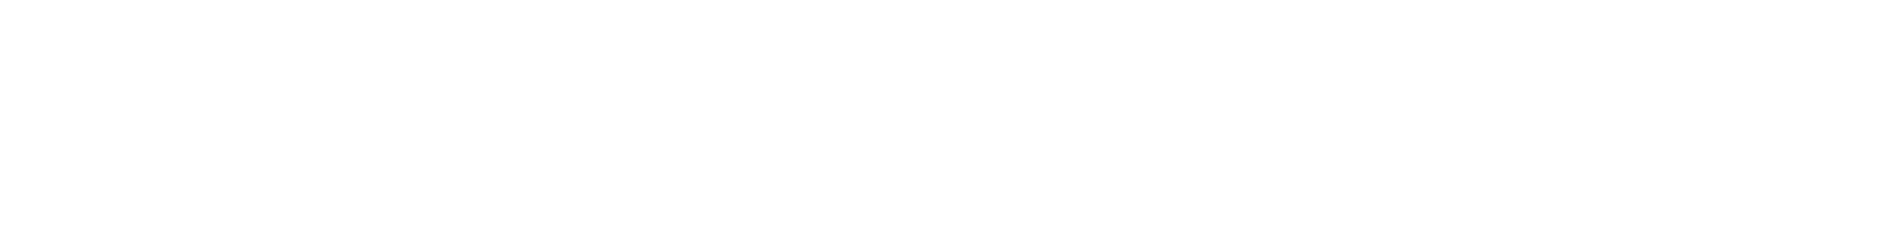 logo-bldwebagency-base-light